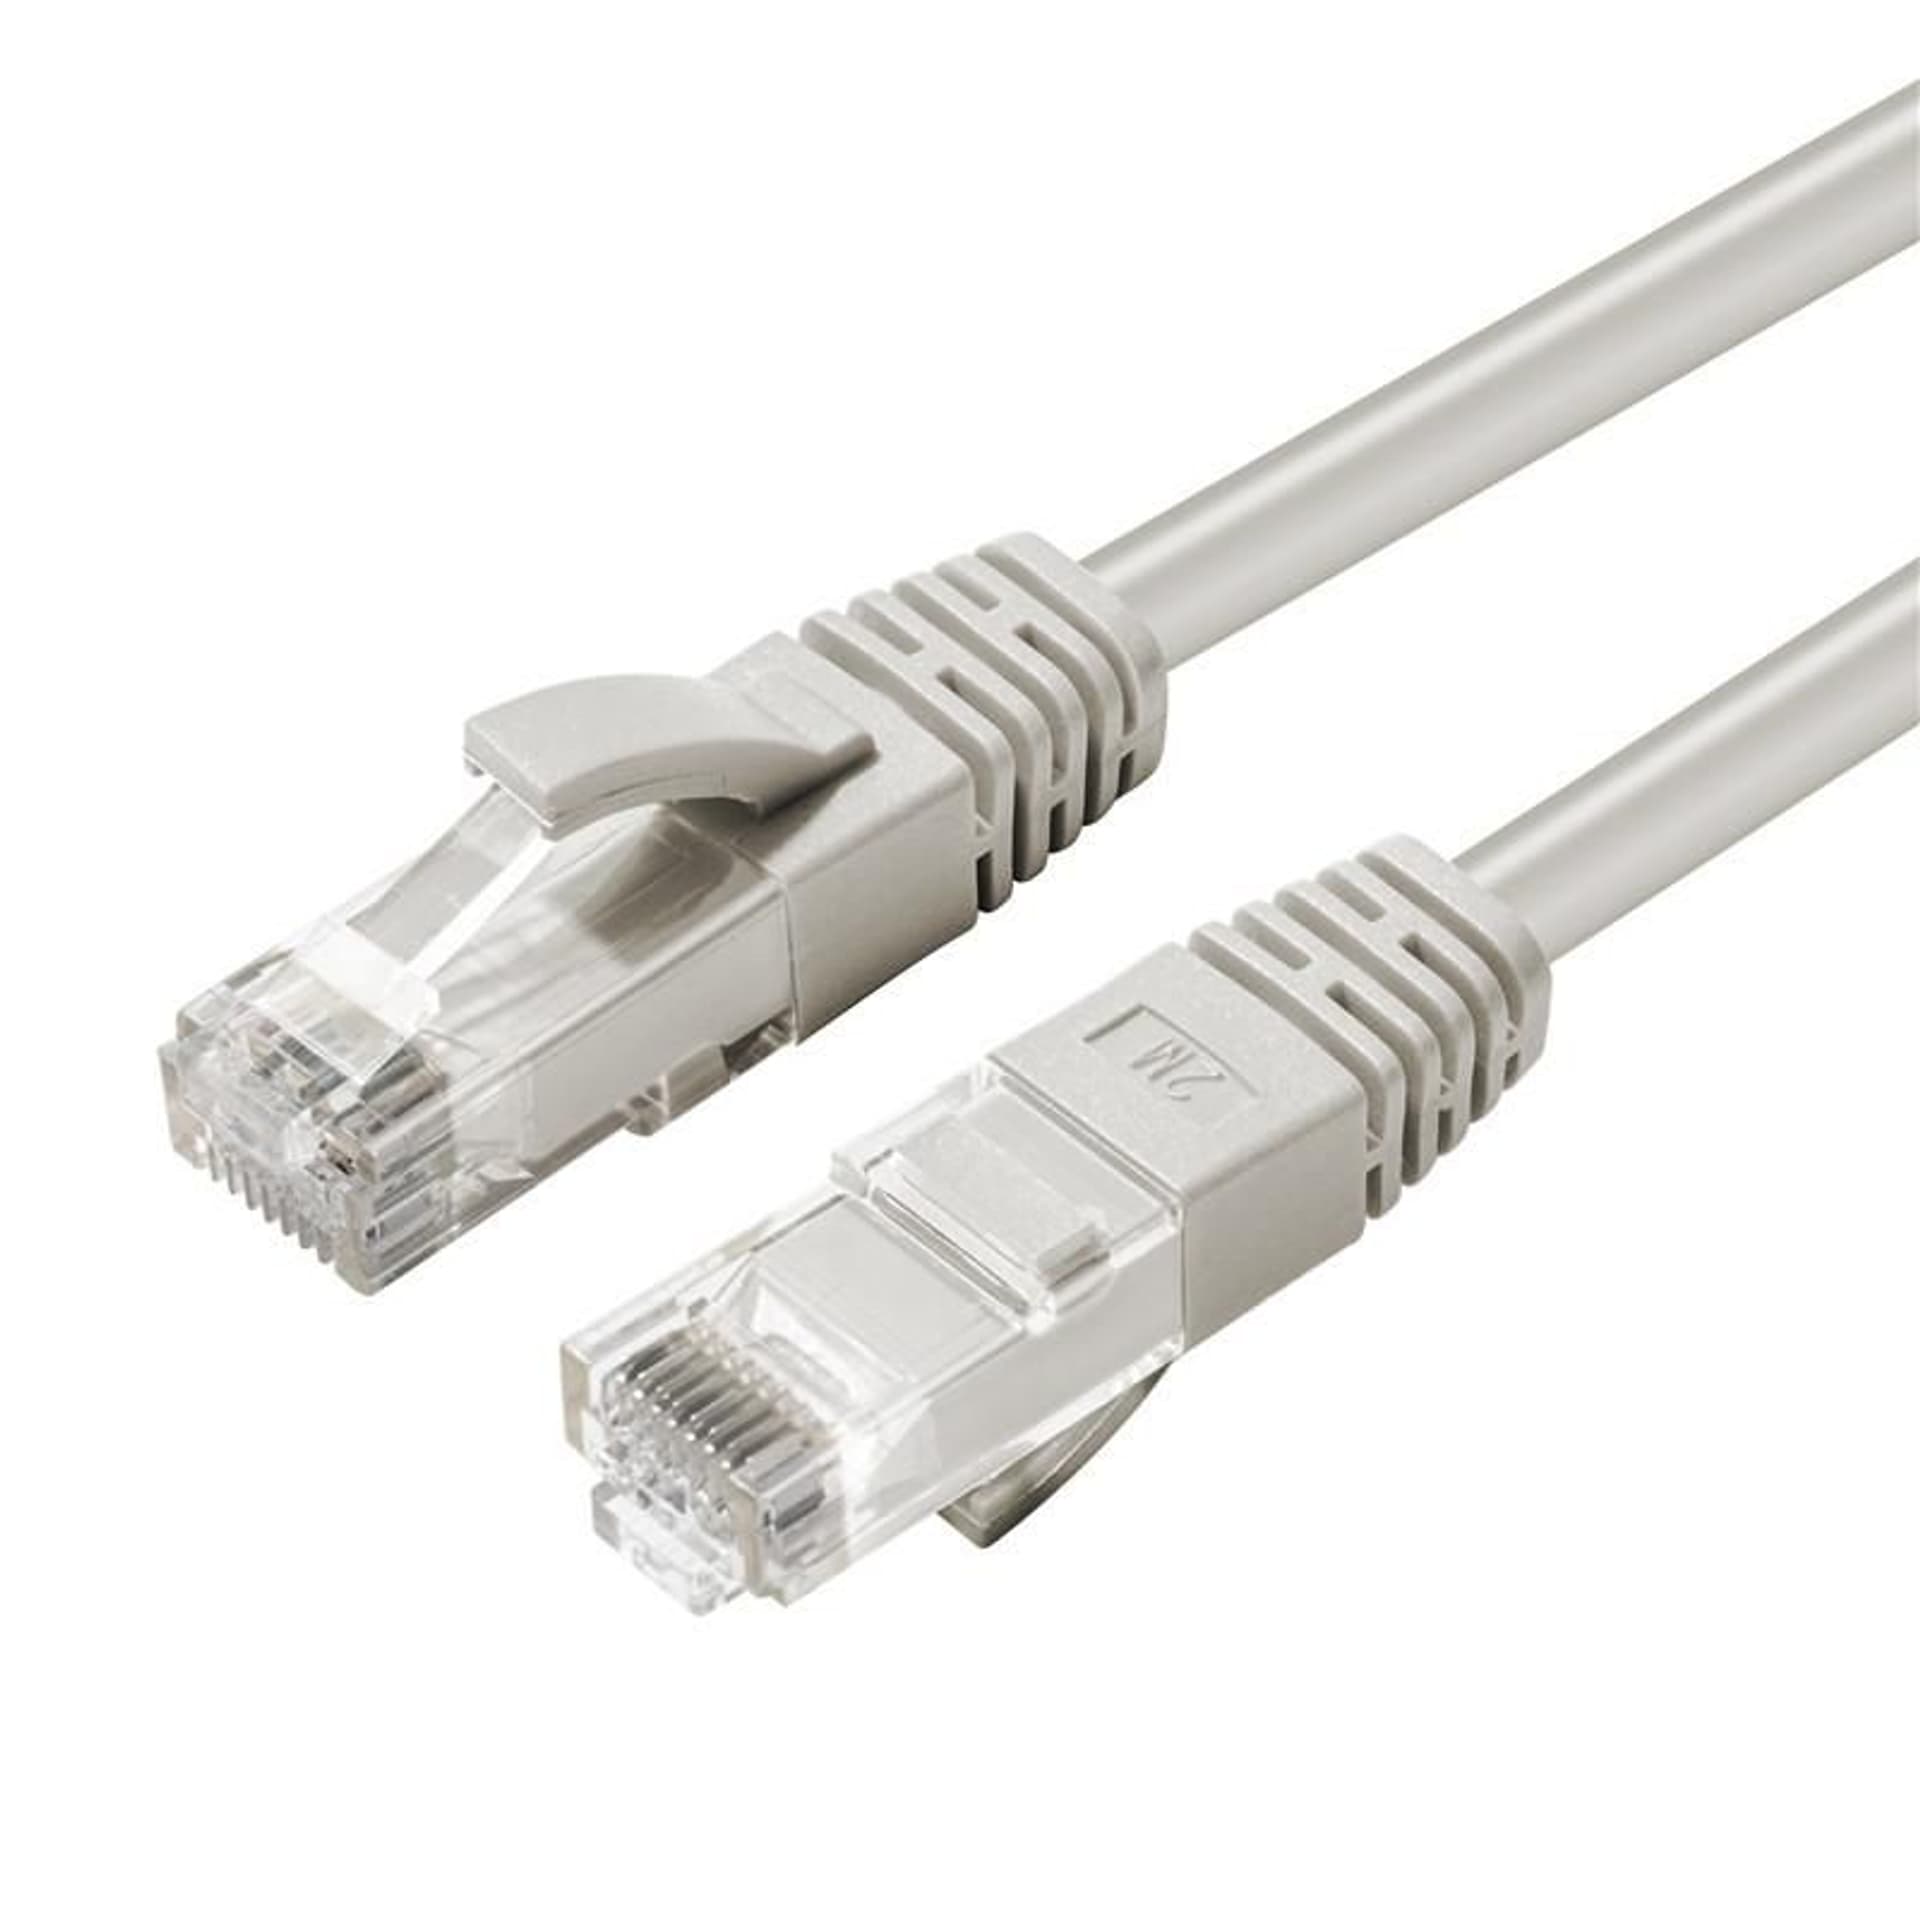 Zdjęcia - Kabel krosowy Microconnect U/UTP CAT6 40M Szary LSZH nieekranowany kabel sieciowy, LSZH, 